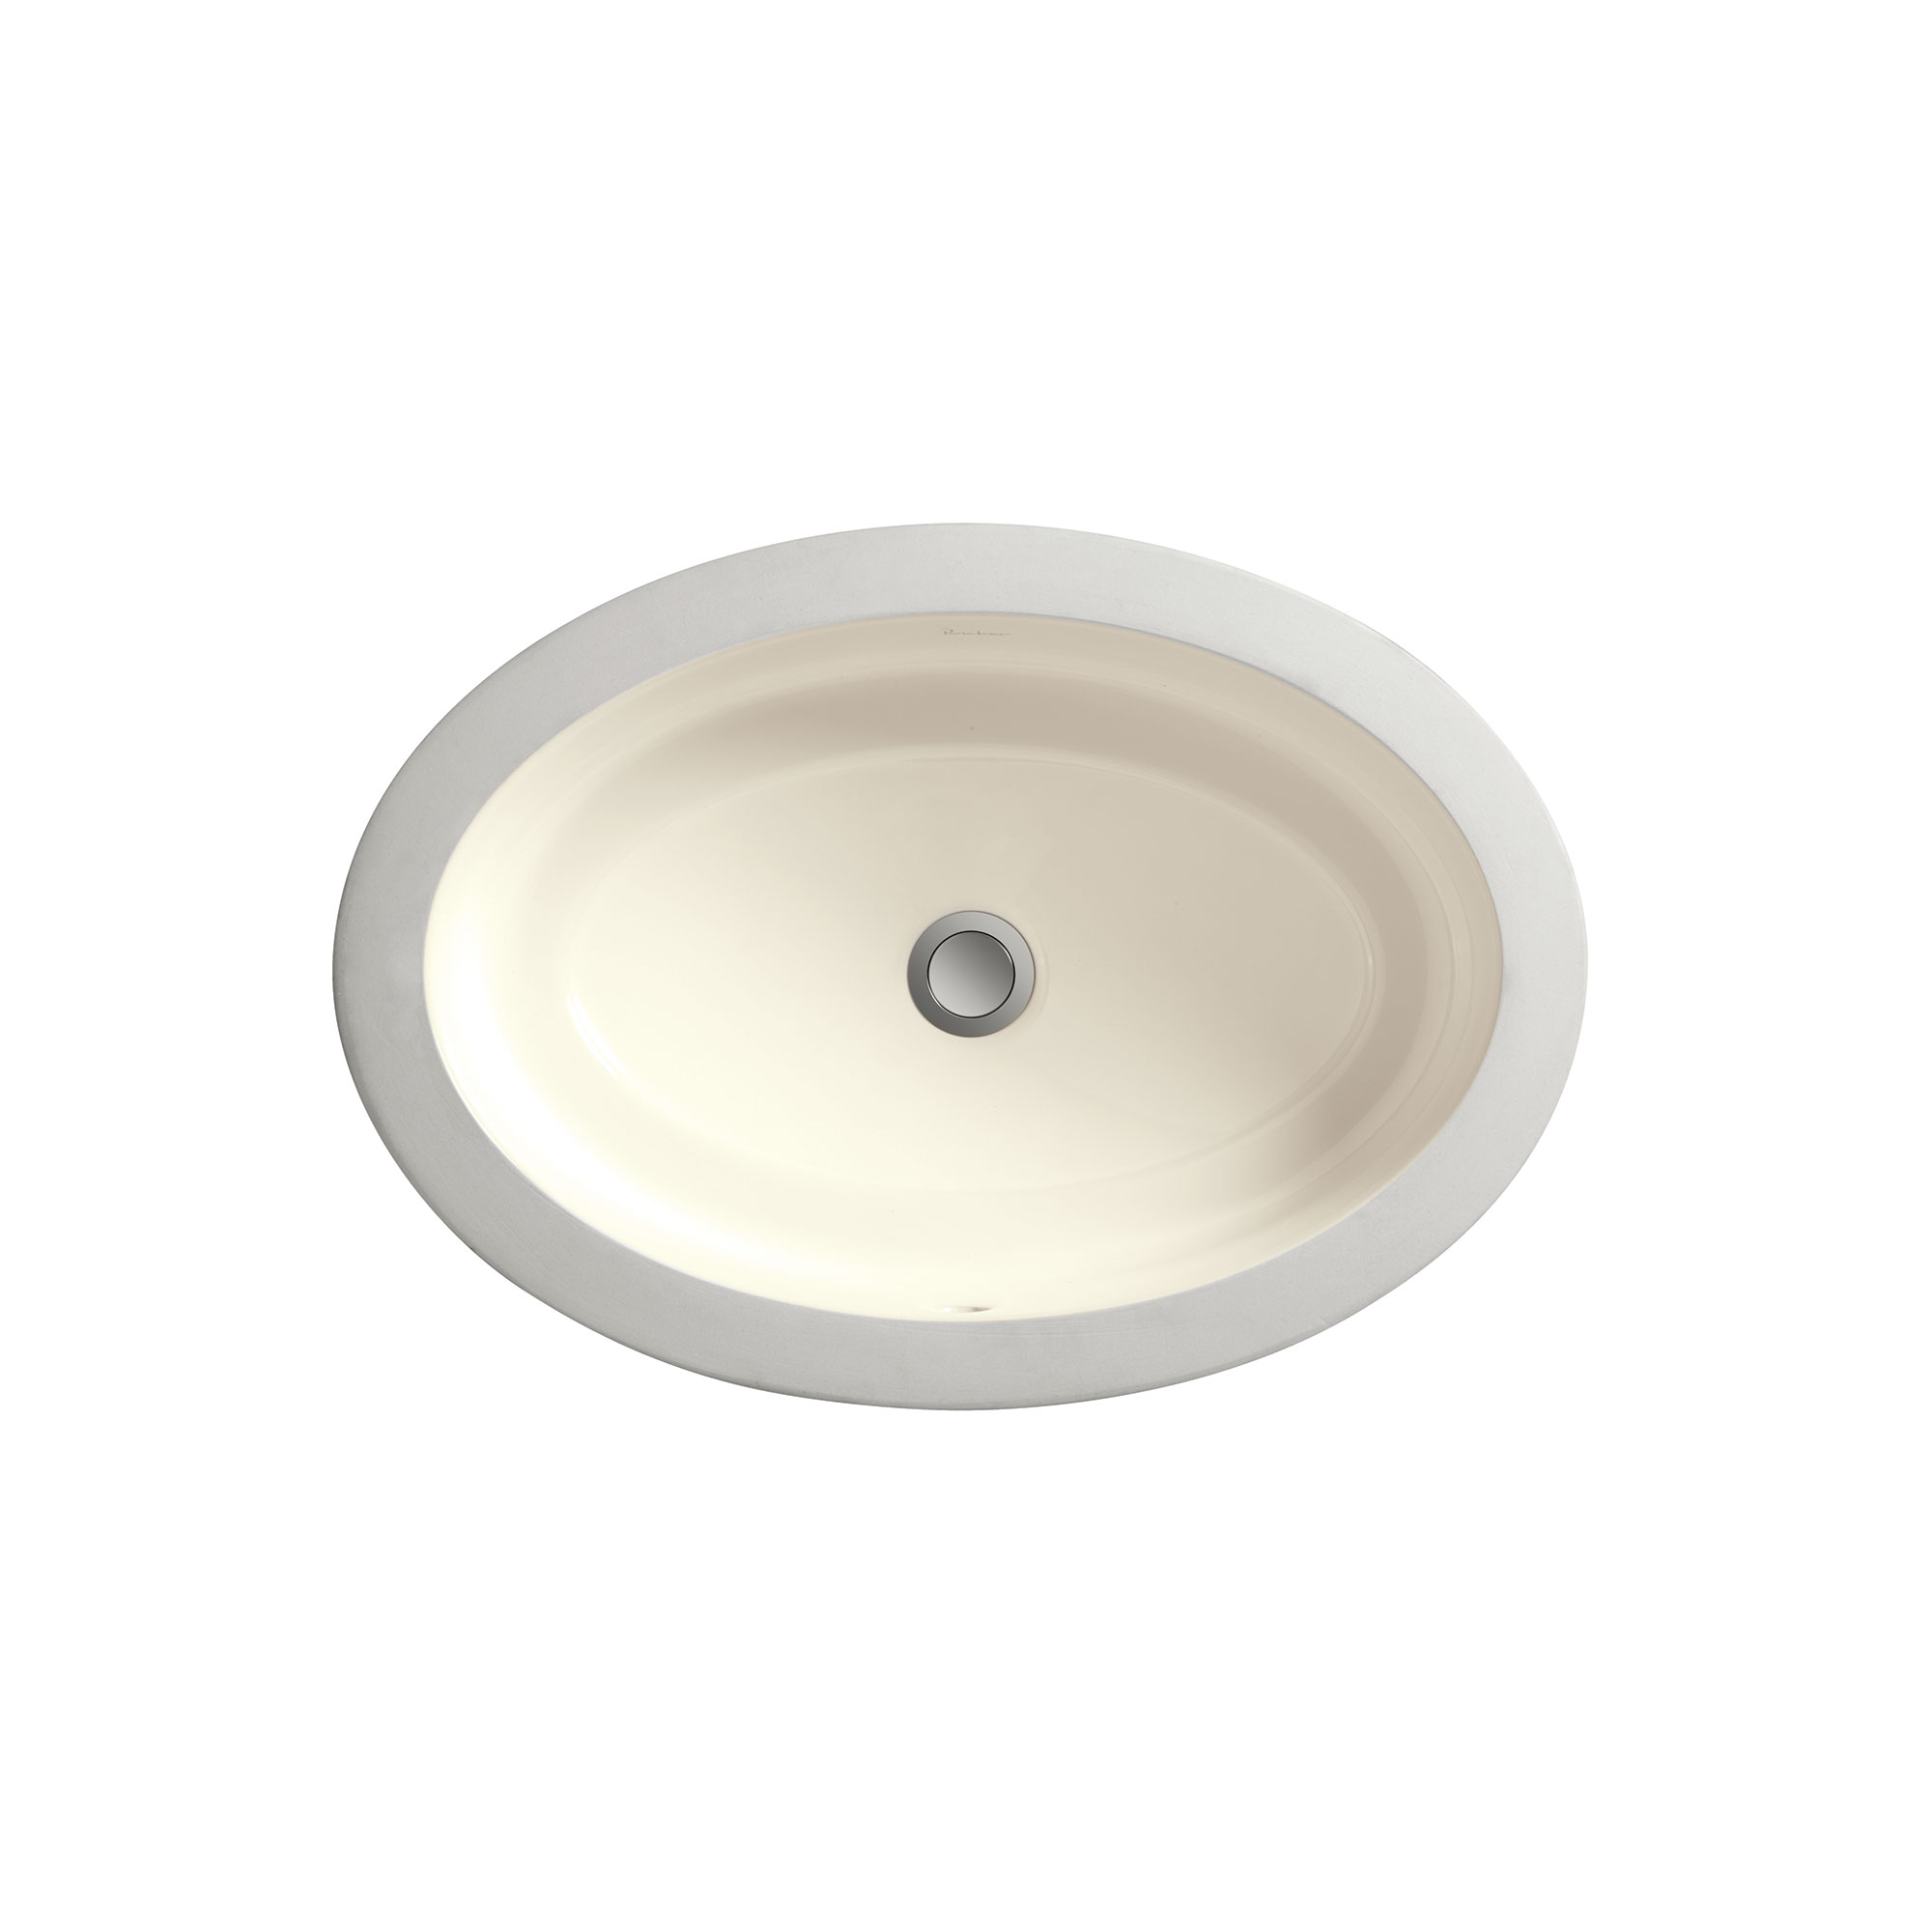 POP® Petite Oval Sink